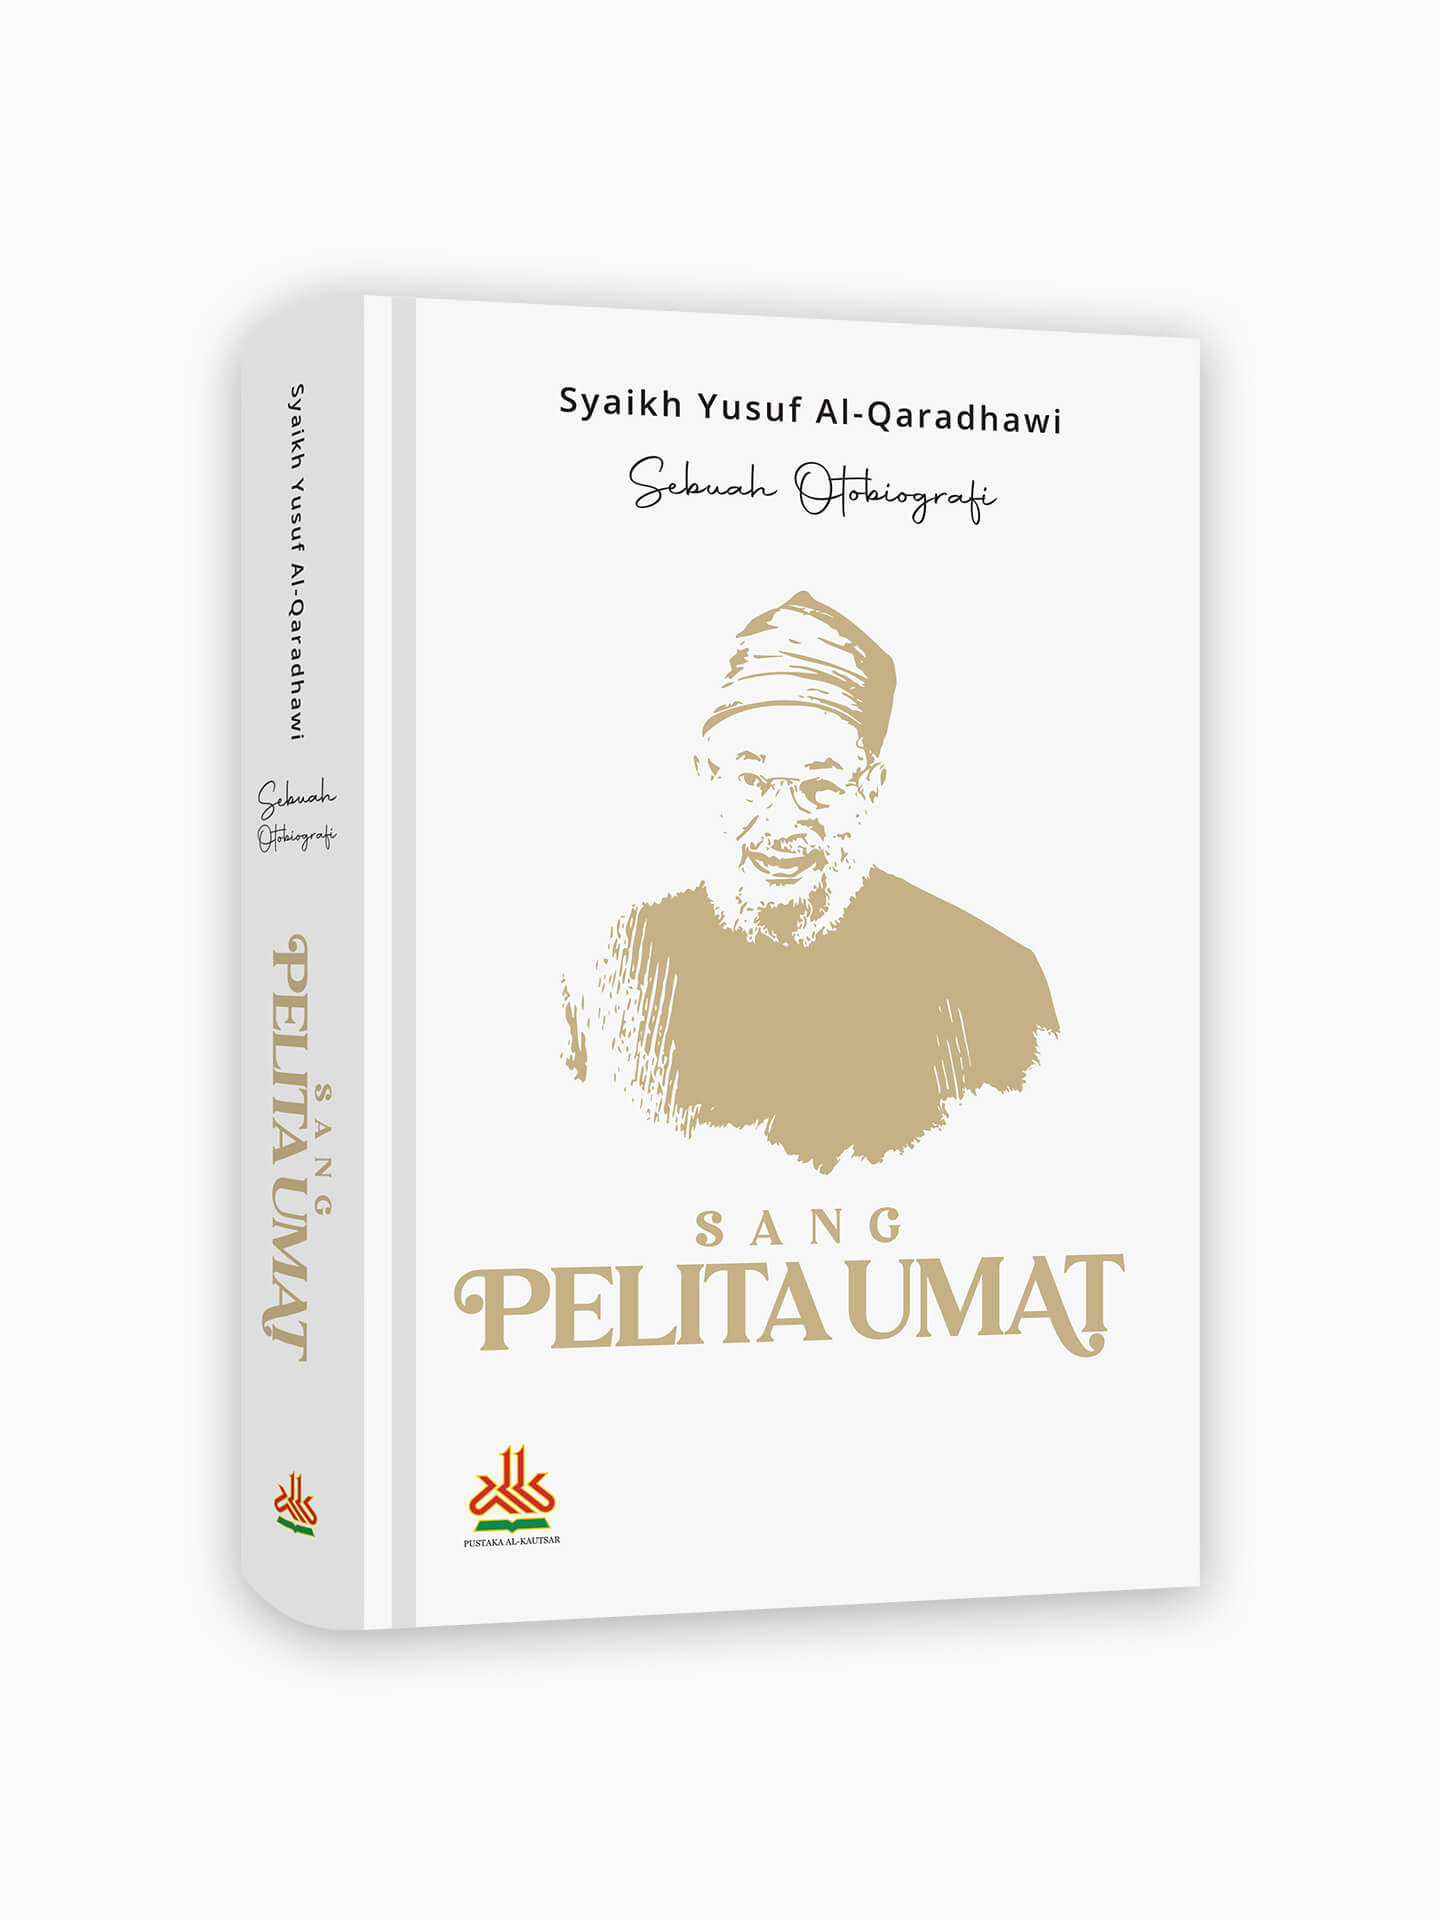 Otobiografi Syaikh Yusuf Al-Qaradhawi : Sang Pelita Umat